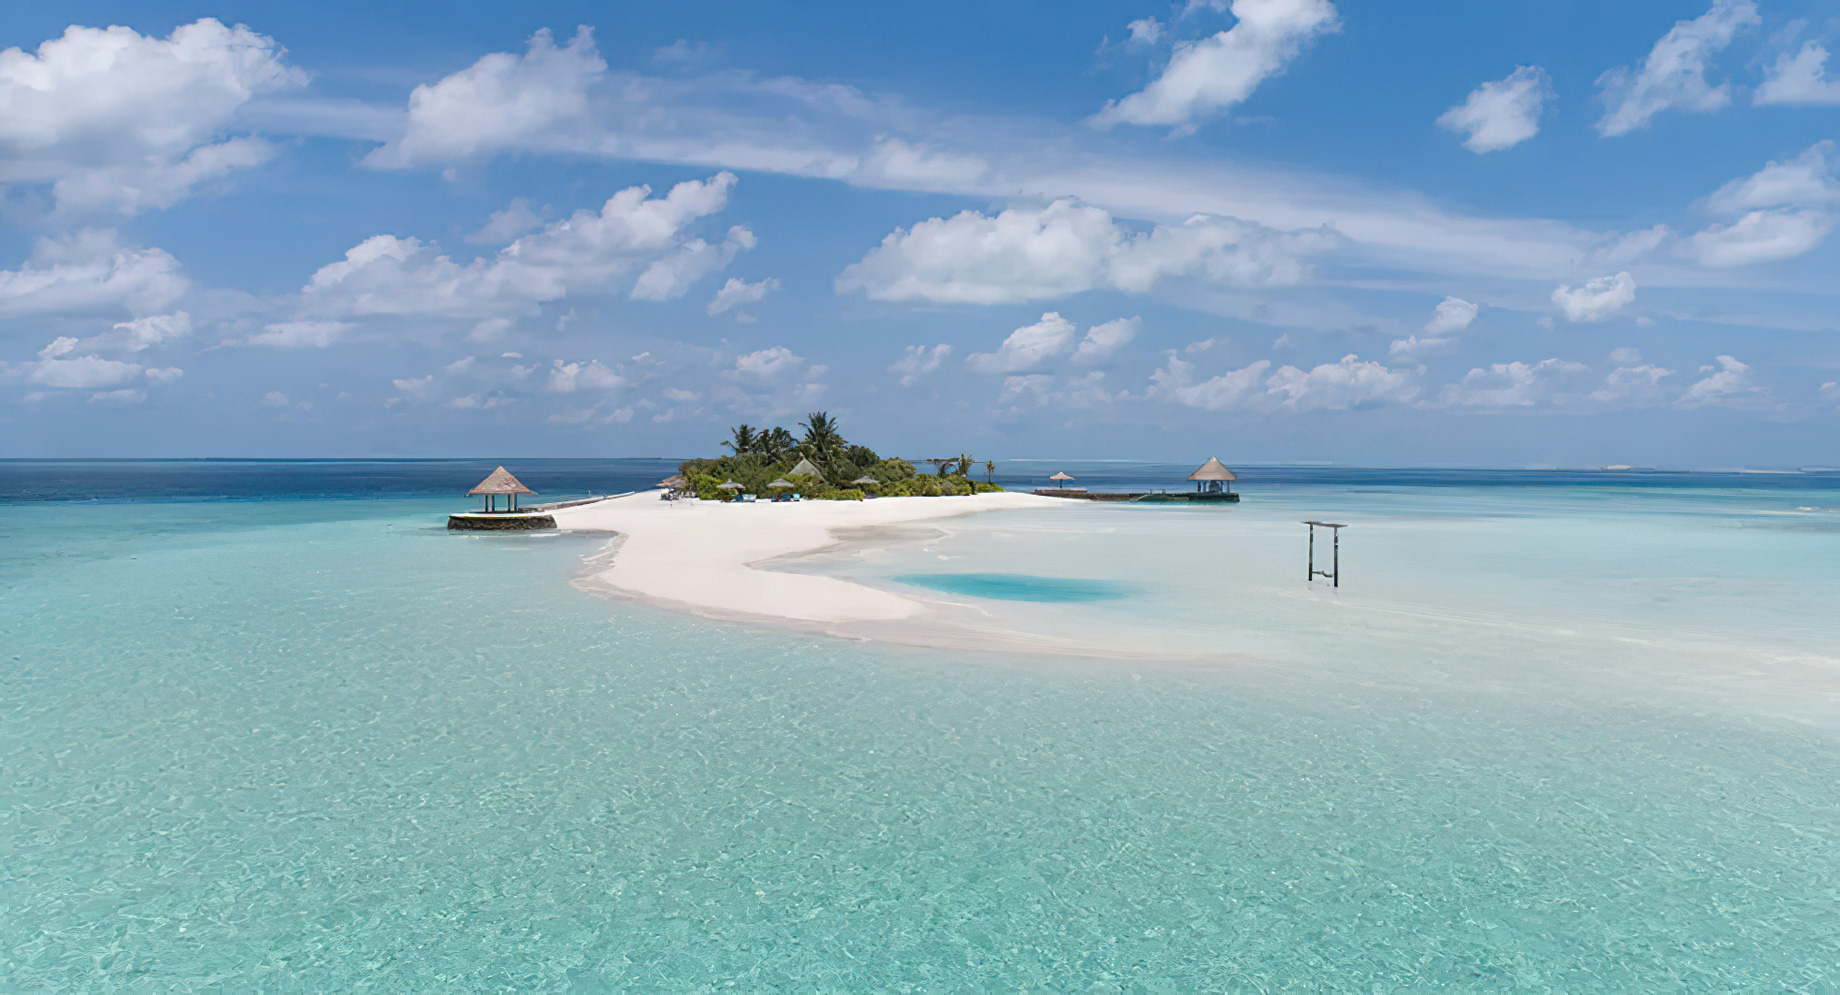 Anantara Thigu Maldives Resort – South Male Atoll, Maldives – Gulhifushi Picnic Island Aerial View